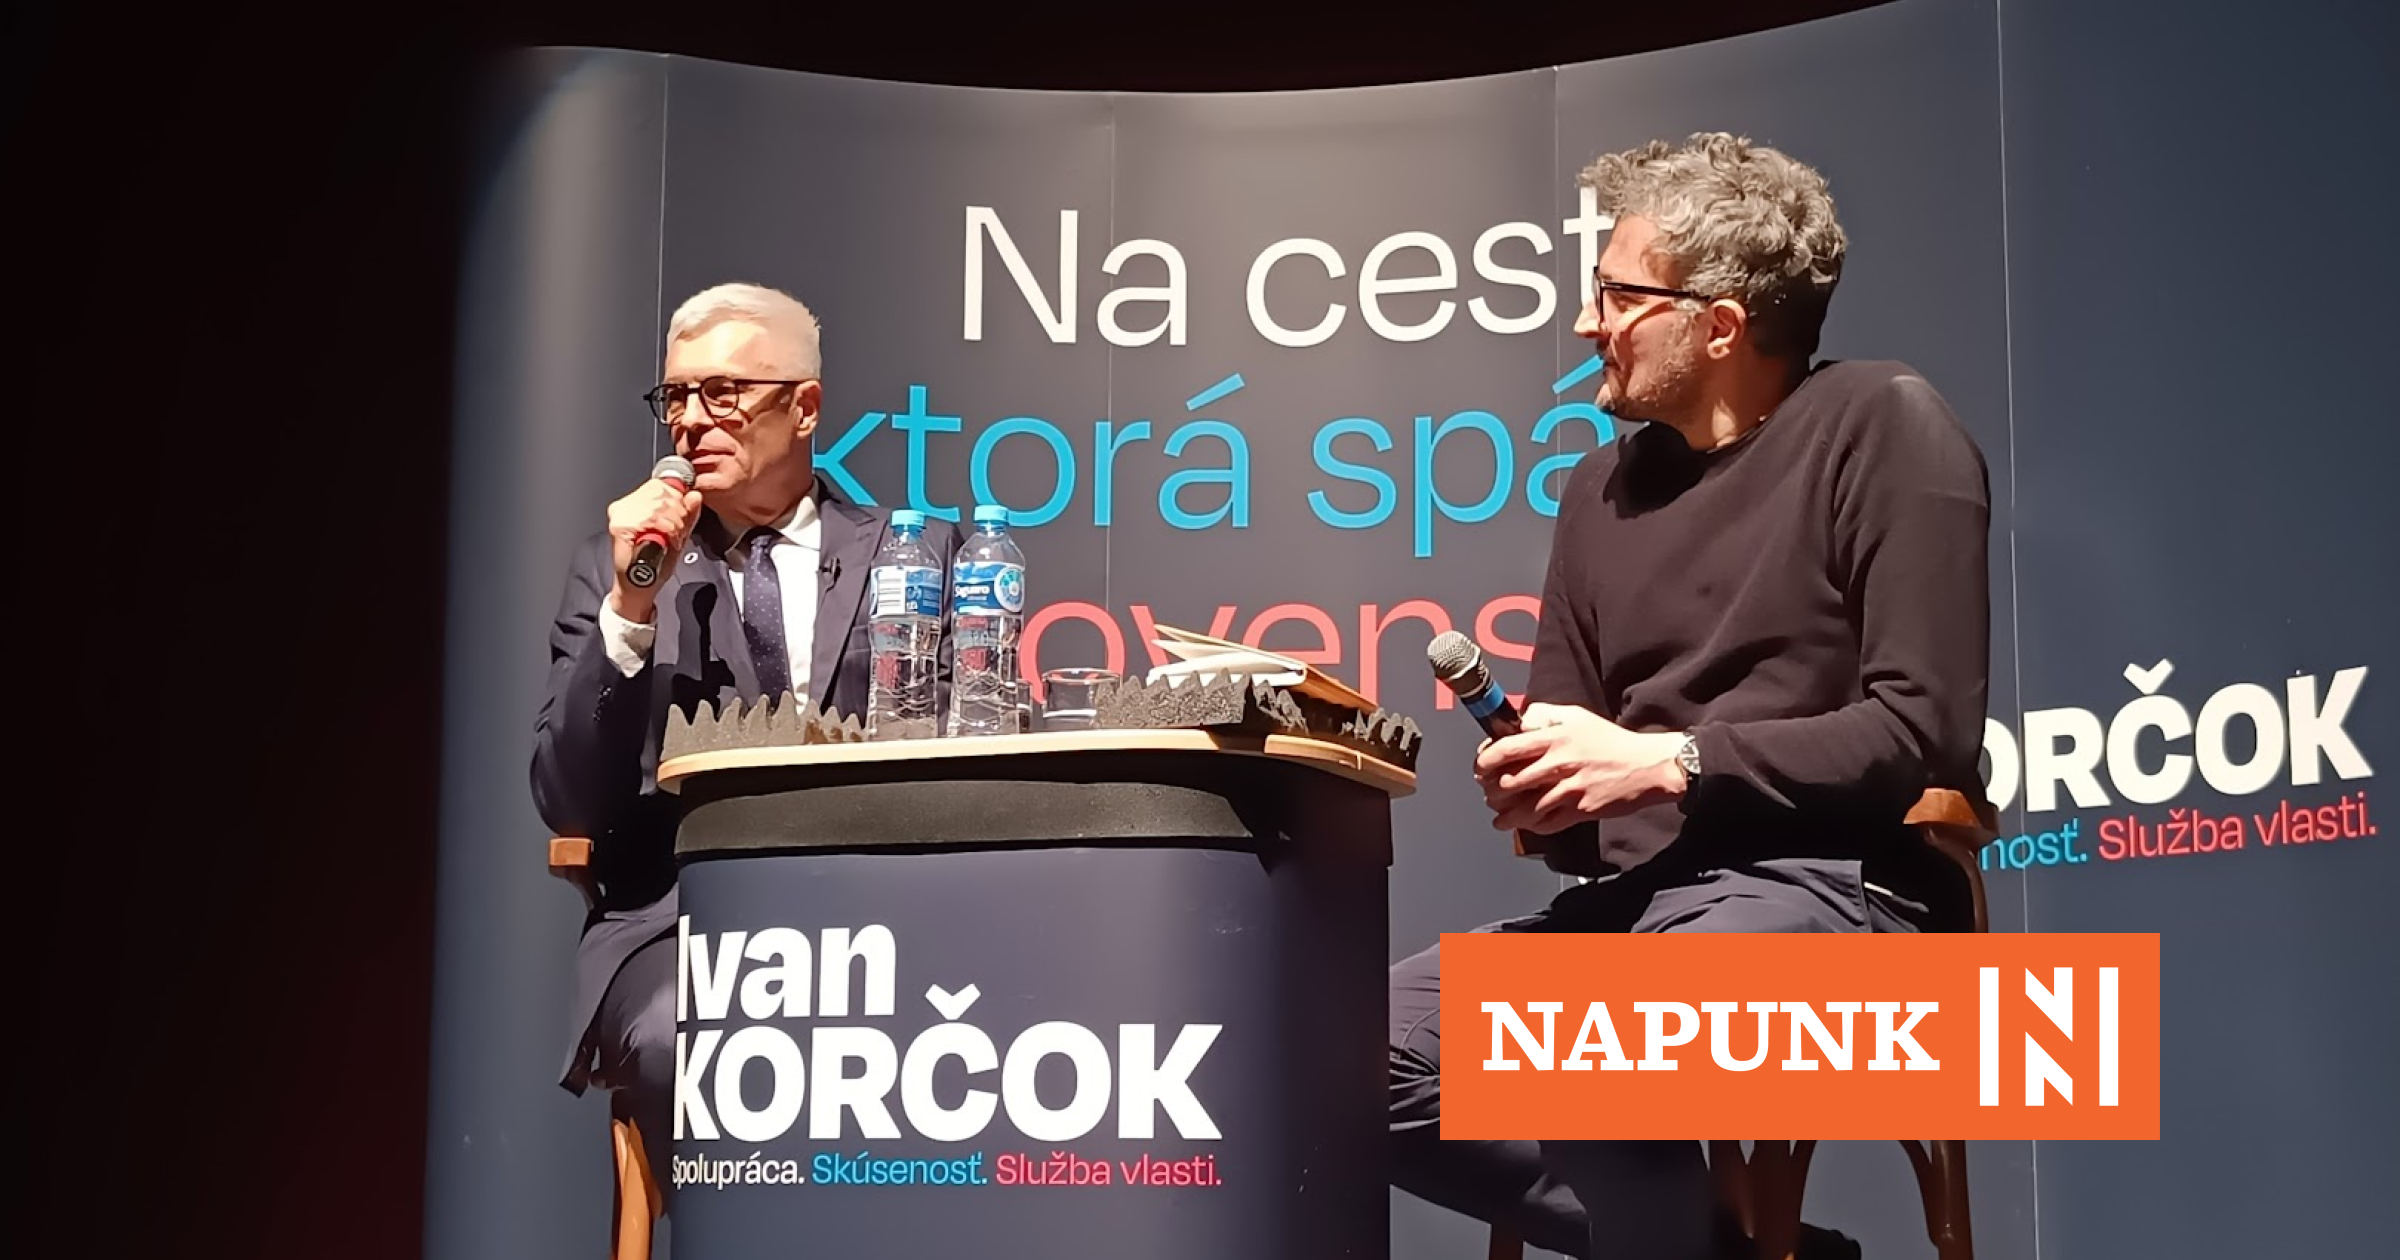 Ivan Korčok Komáromban: Nem fogom azt mondani a magyaroknak, hogy szeressék Trianont. De legyen empátiánk